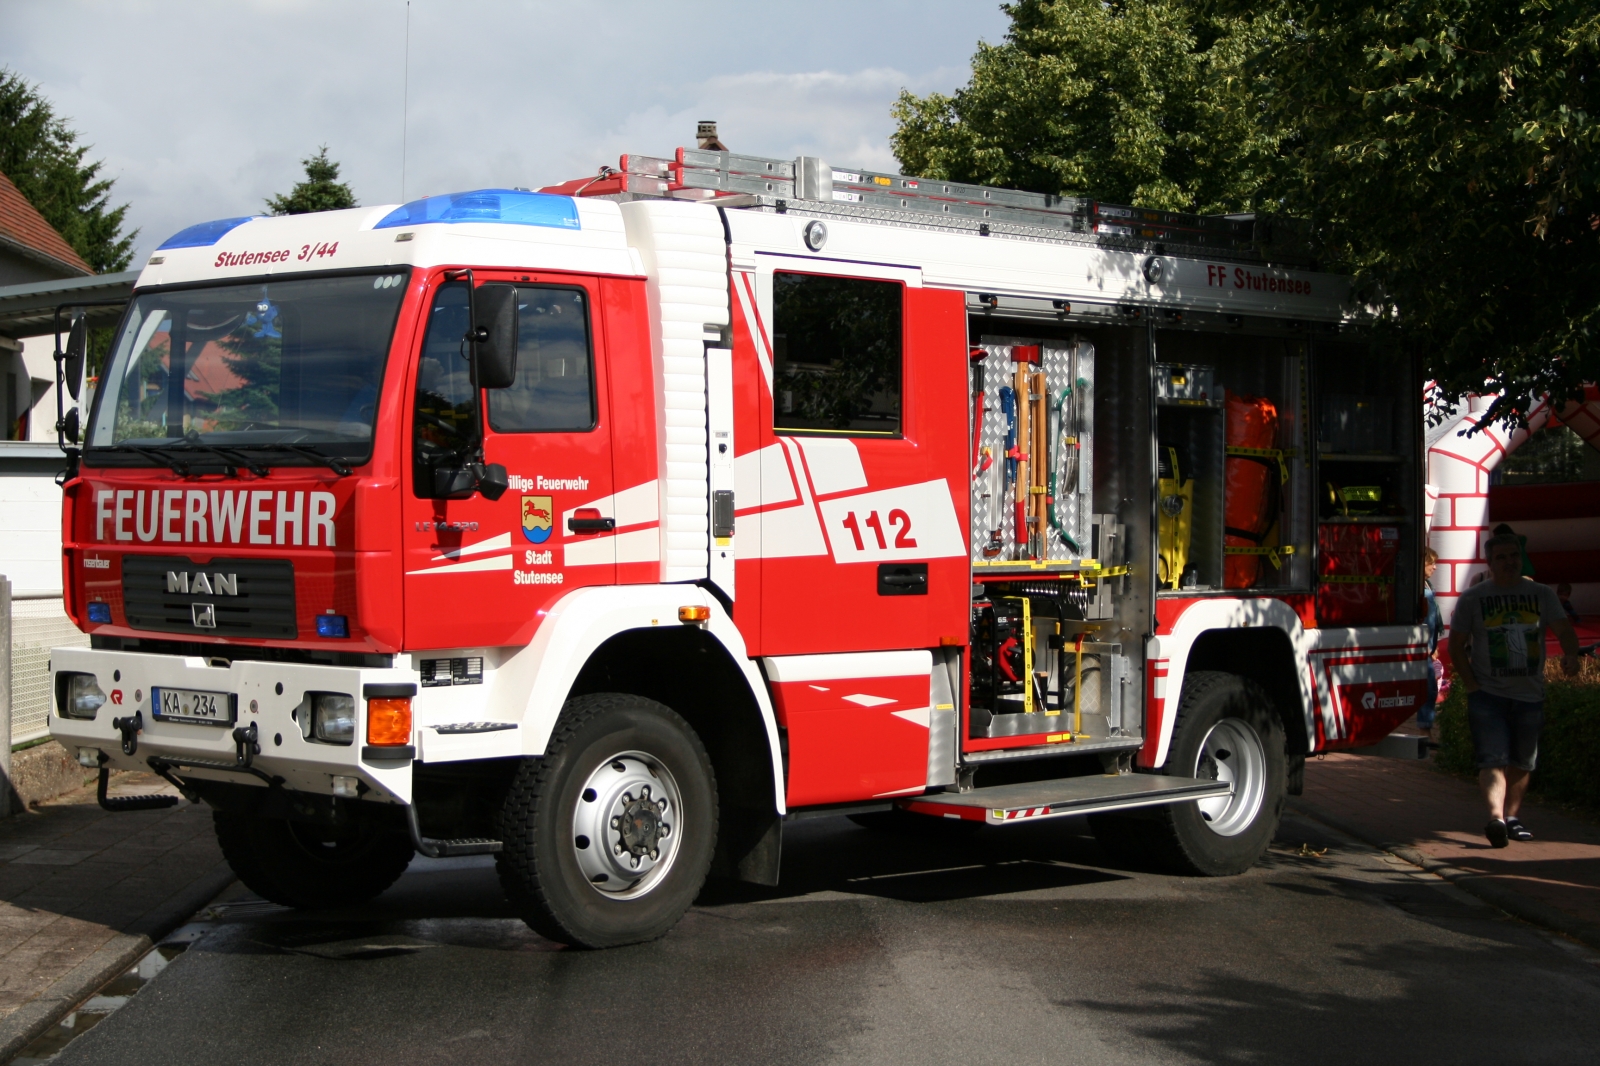 MAN LE 14.220 Feuerwehr mit Aufbau von Rosenbauer